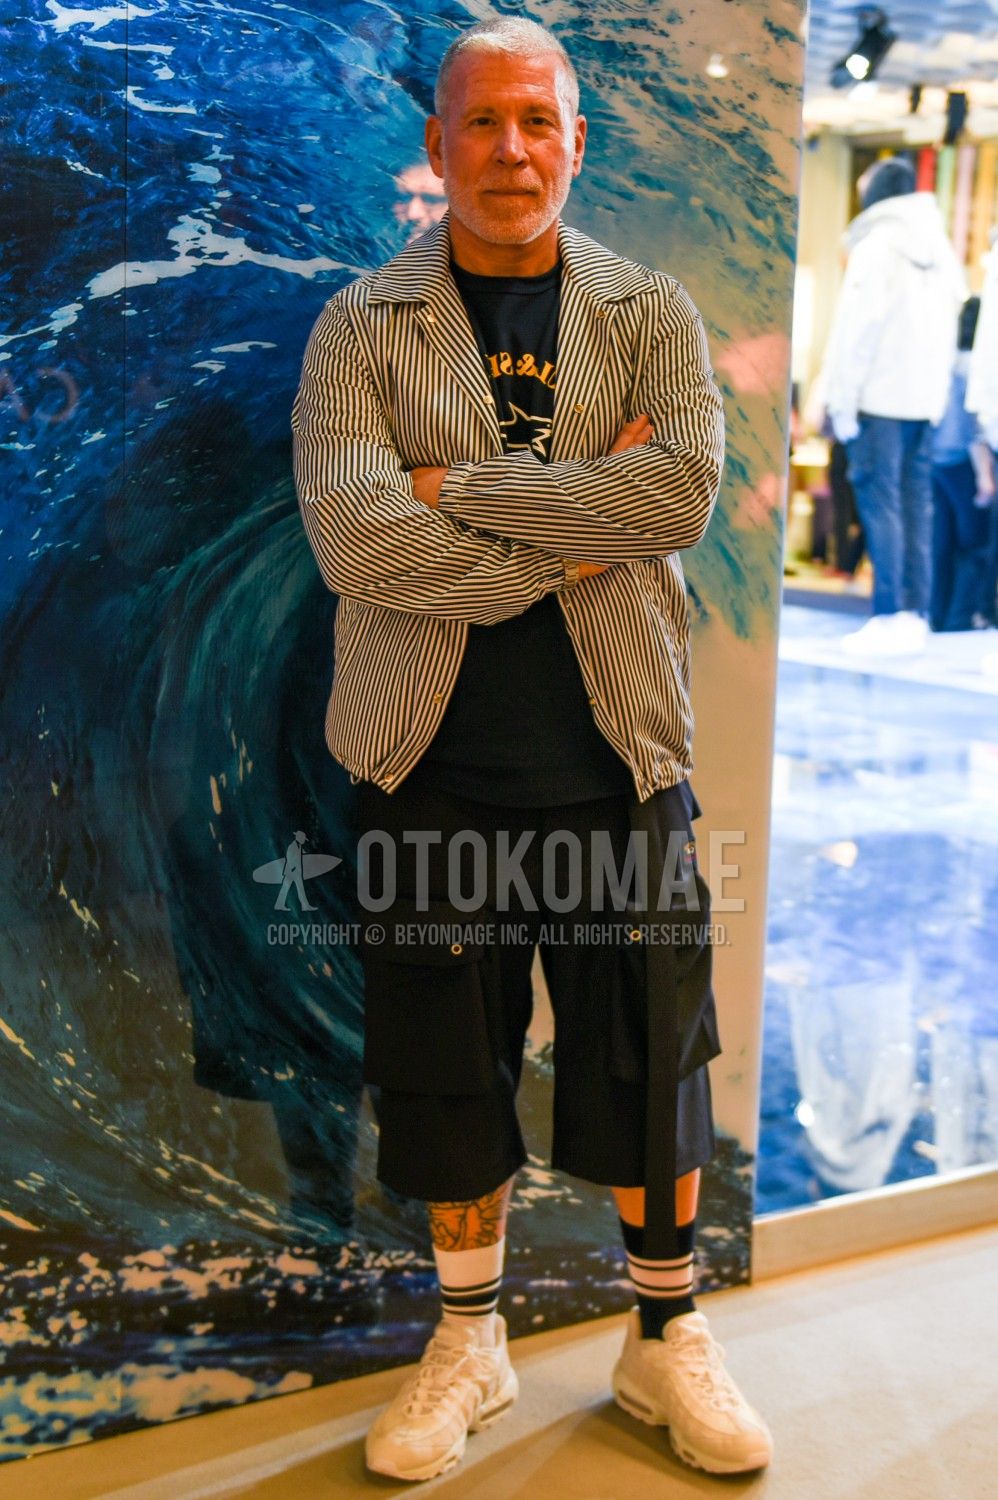 エアマックス コーデ特集 ナイキの人気スニーカーを使ったメンズ着こなしを紹介 メンズファッションメディア Otokomaeotokomae 男前研究所